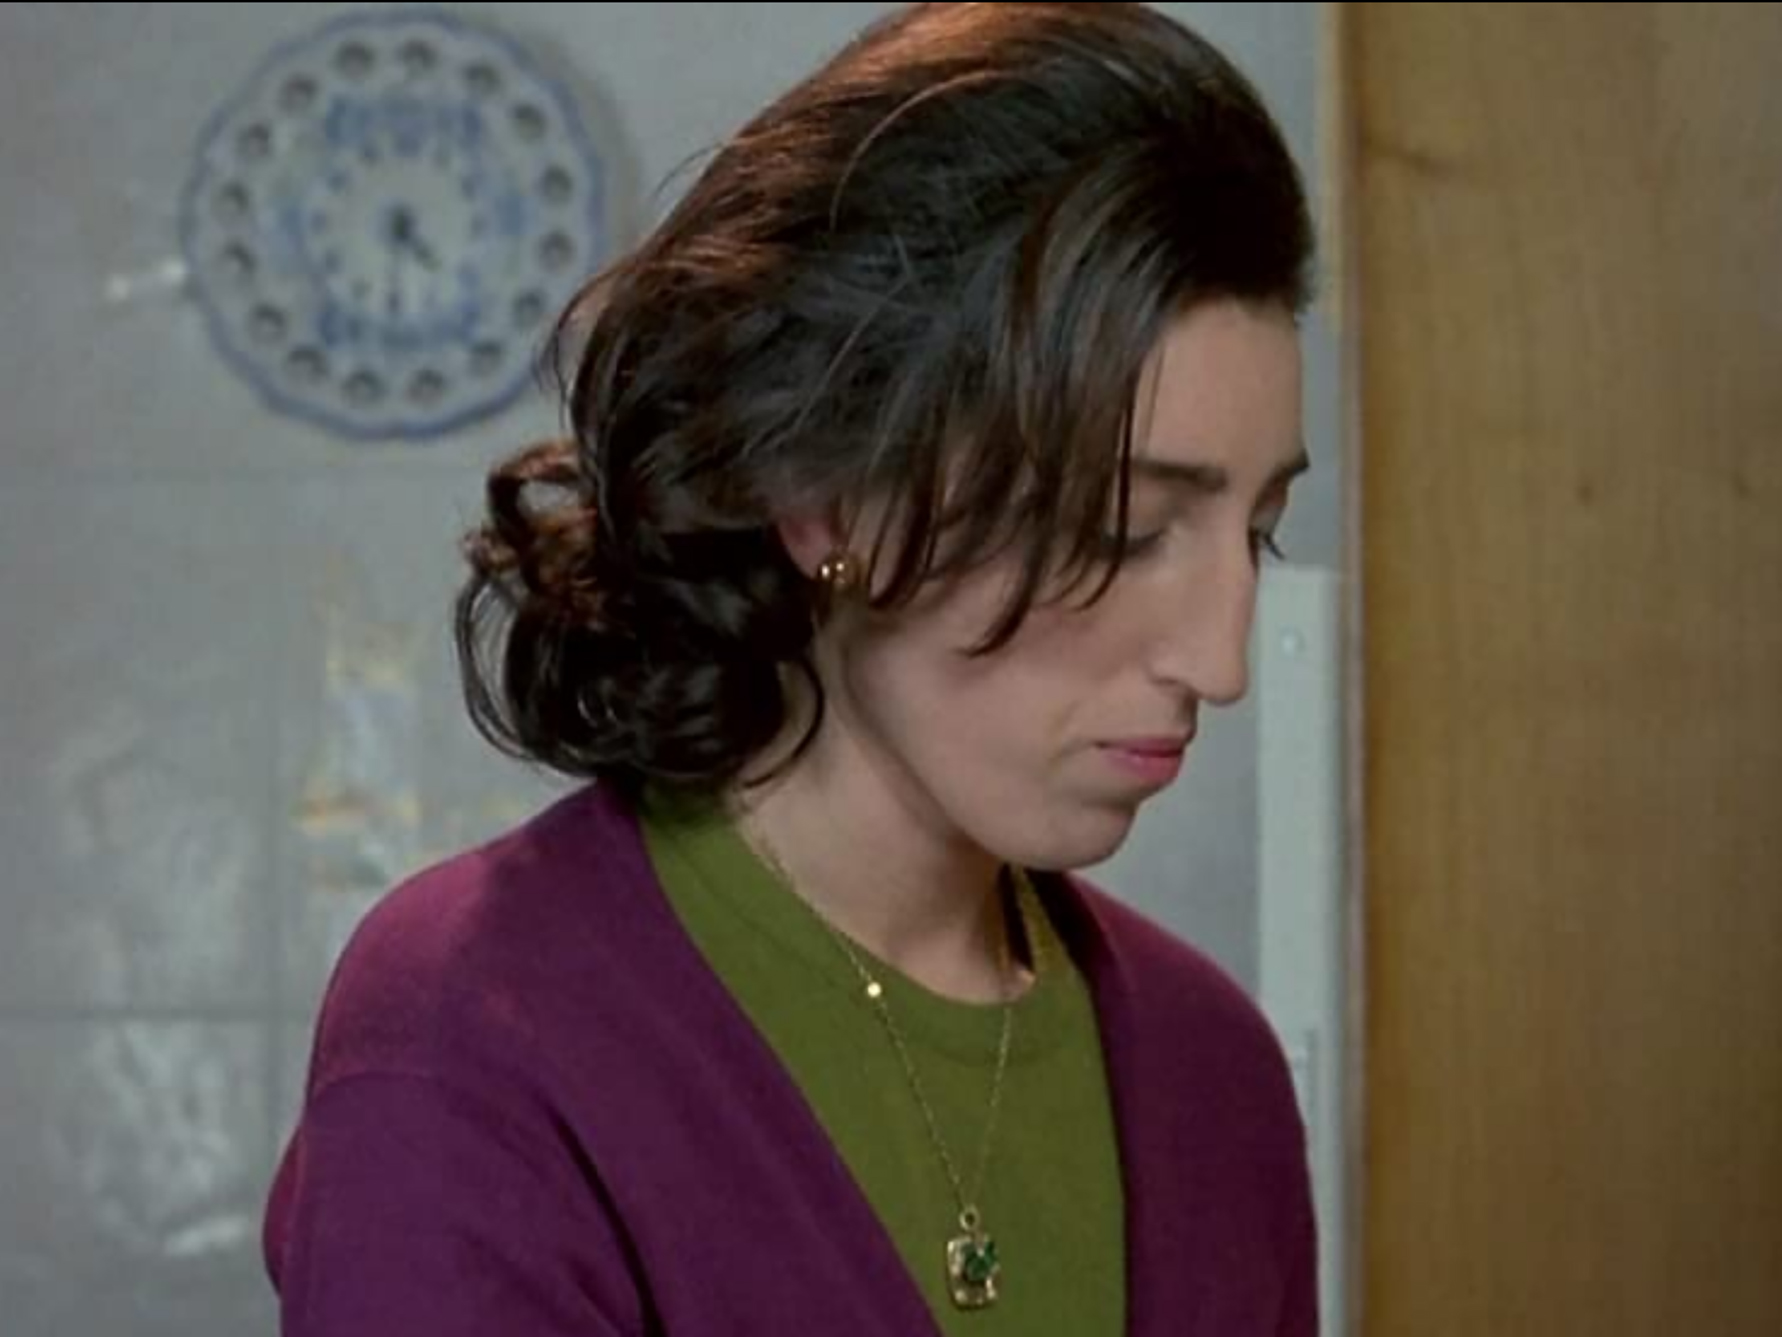 Rossy de Palma in "The Flower of My Secret" (1995)